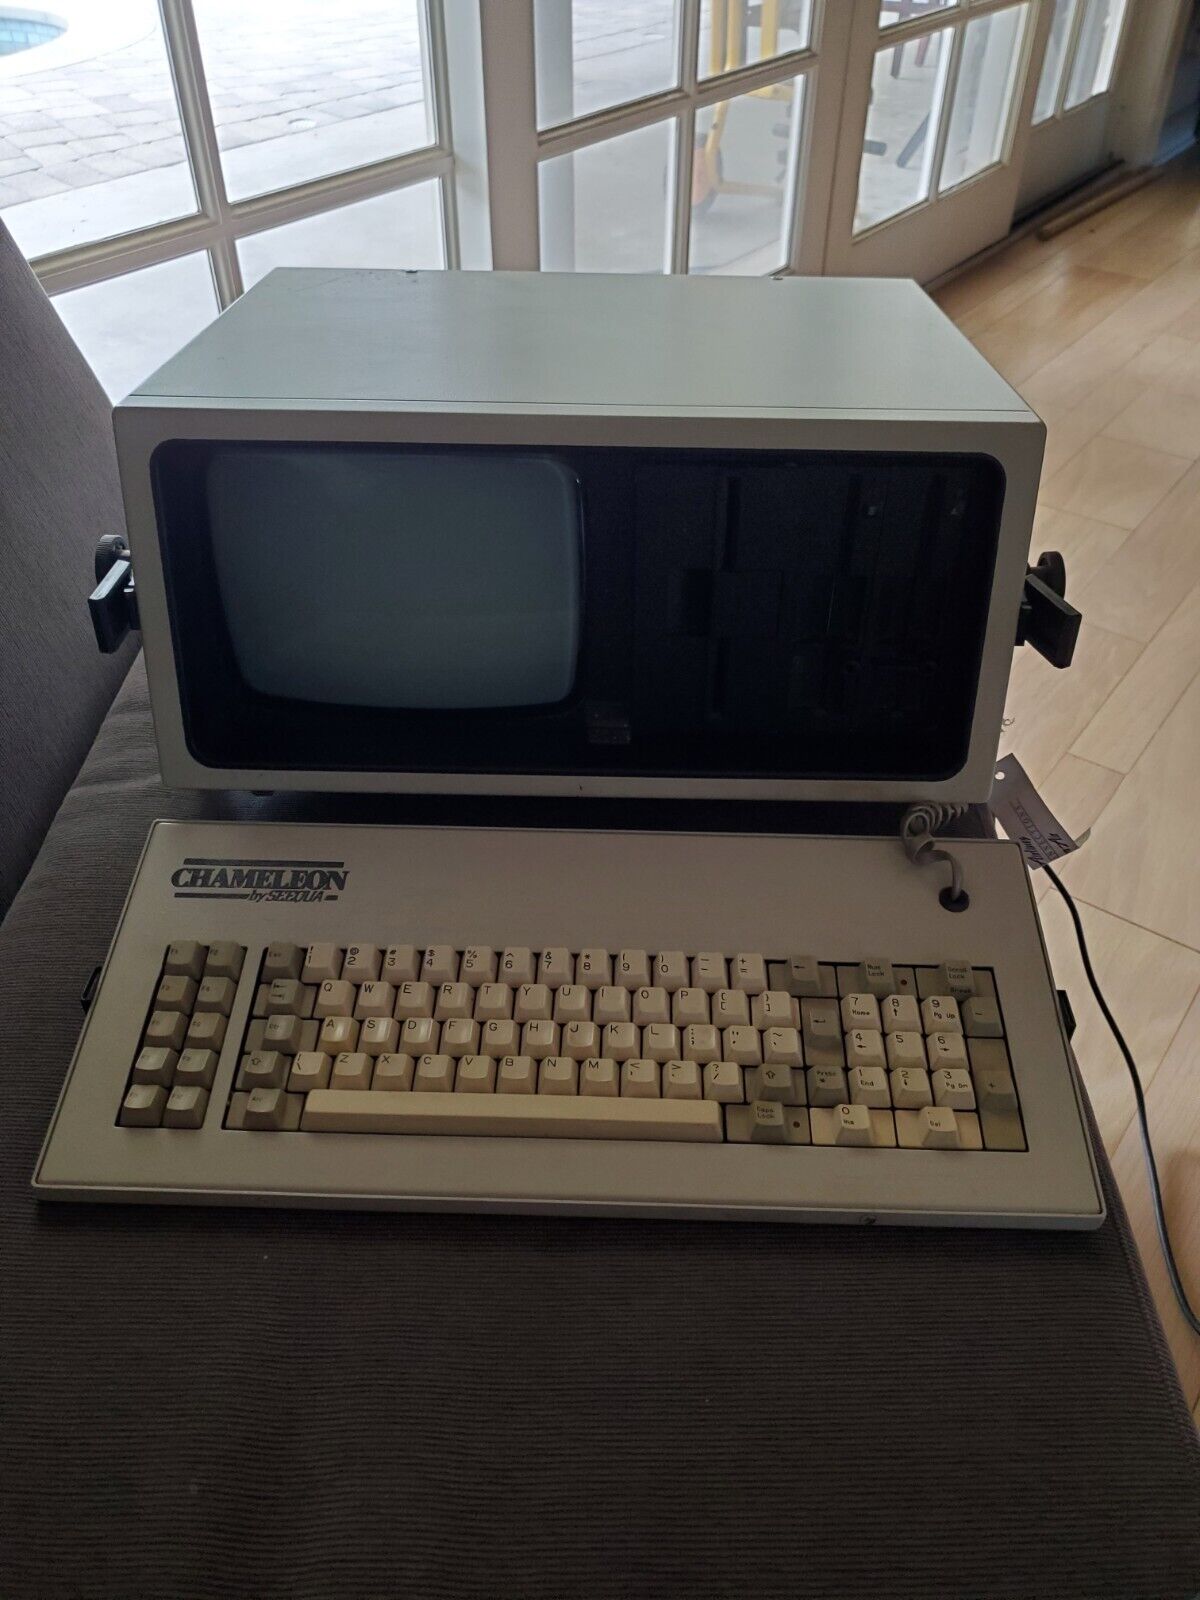 RARE Vintage Seequa Chameleon Luggable 8088 DOS Computer